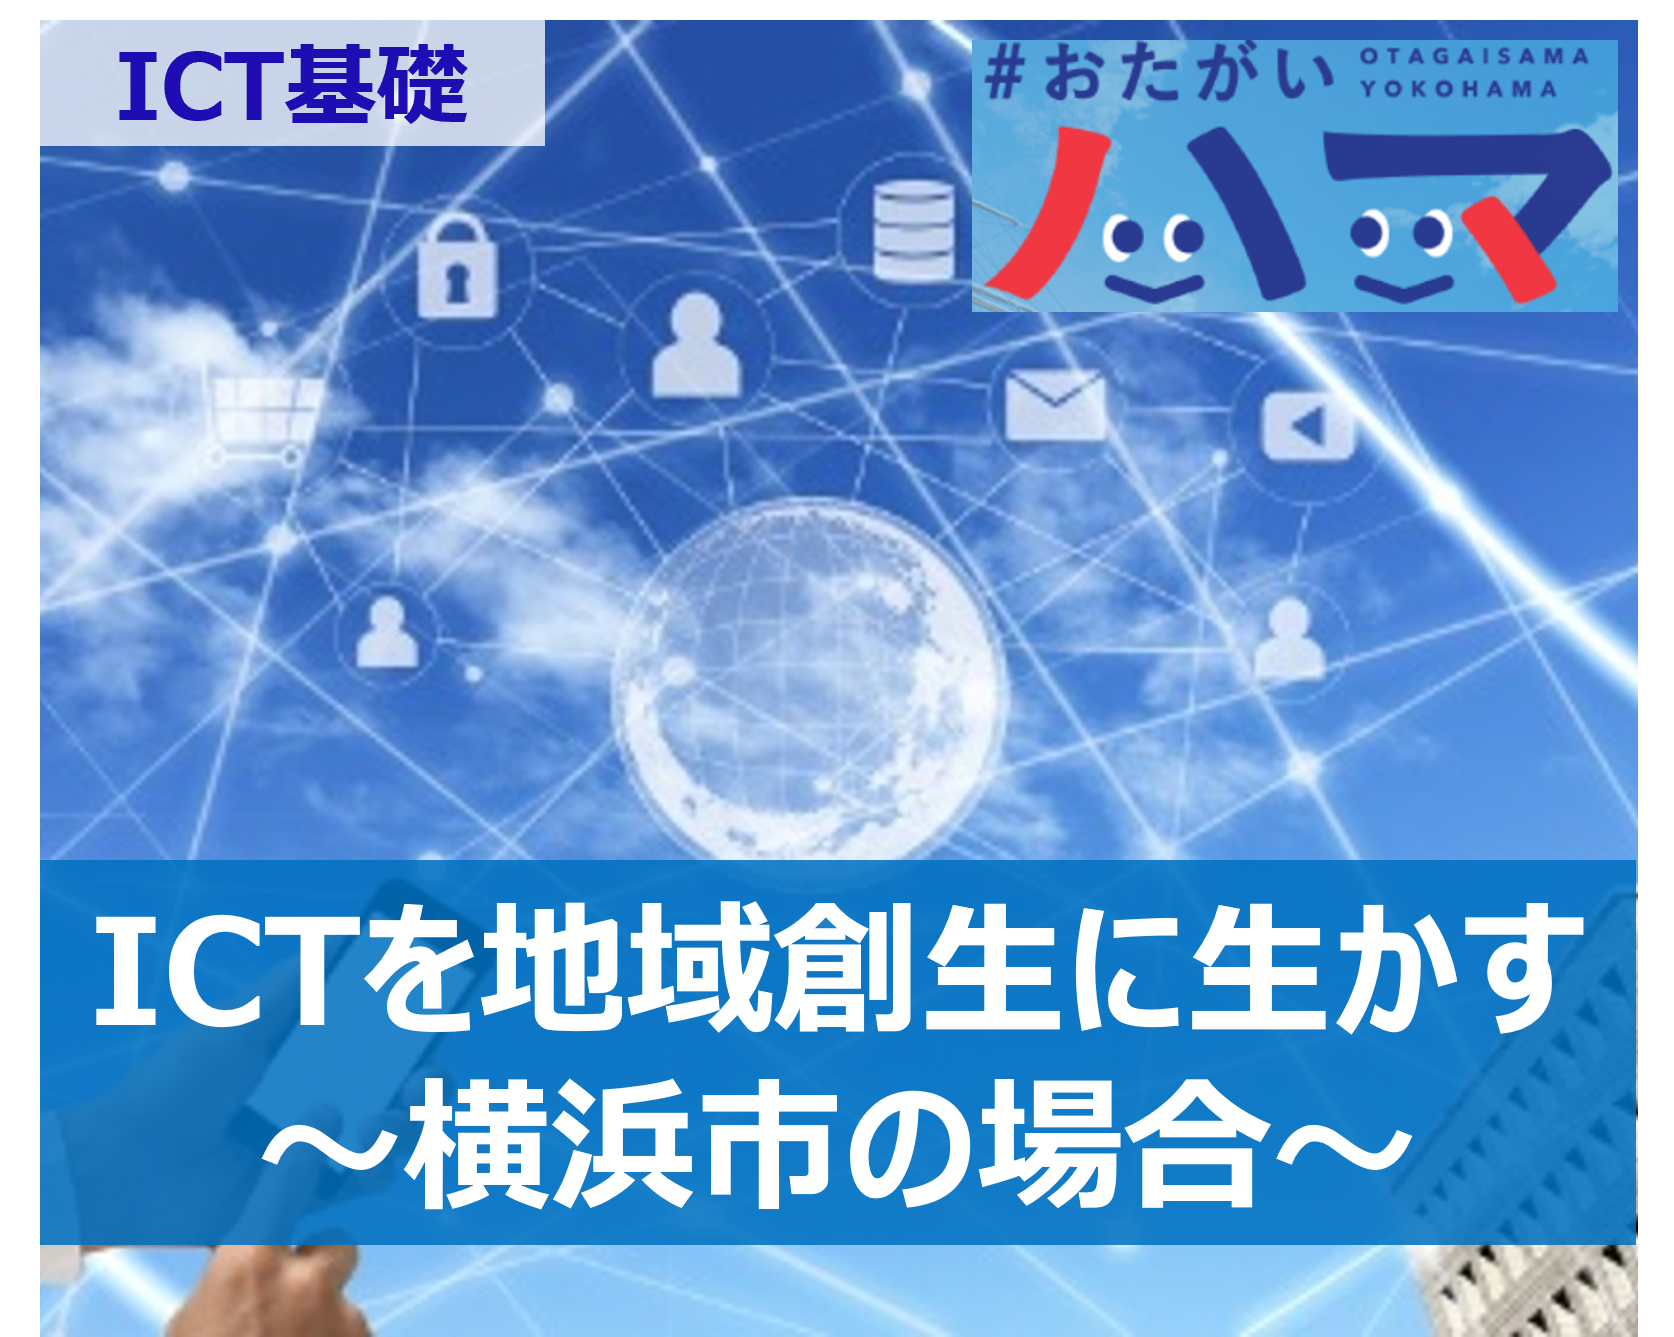 ICTを地域創生に生かす取り組み（横浜） - ICT基礎